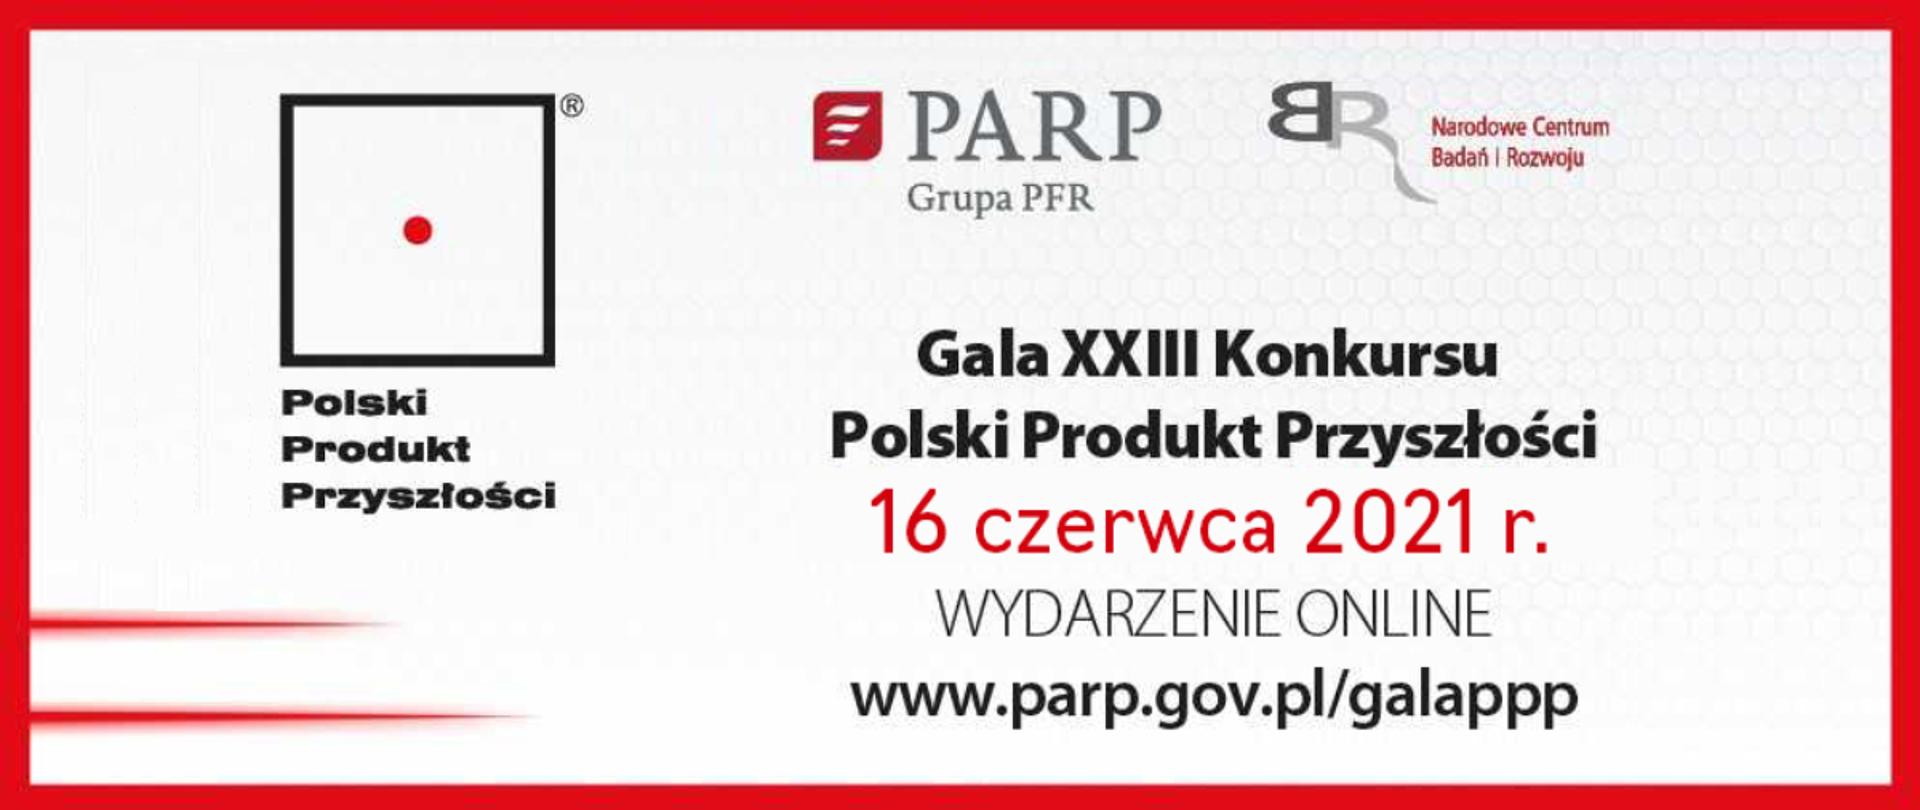 600 tys. zł dla Polskich Produktów Przyszłości.
Wyniki poznamy już 16 czerwca podczas gali on-line
